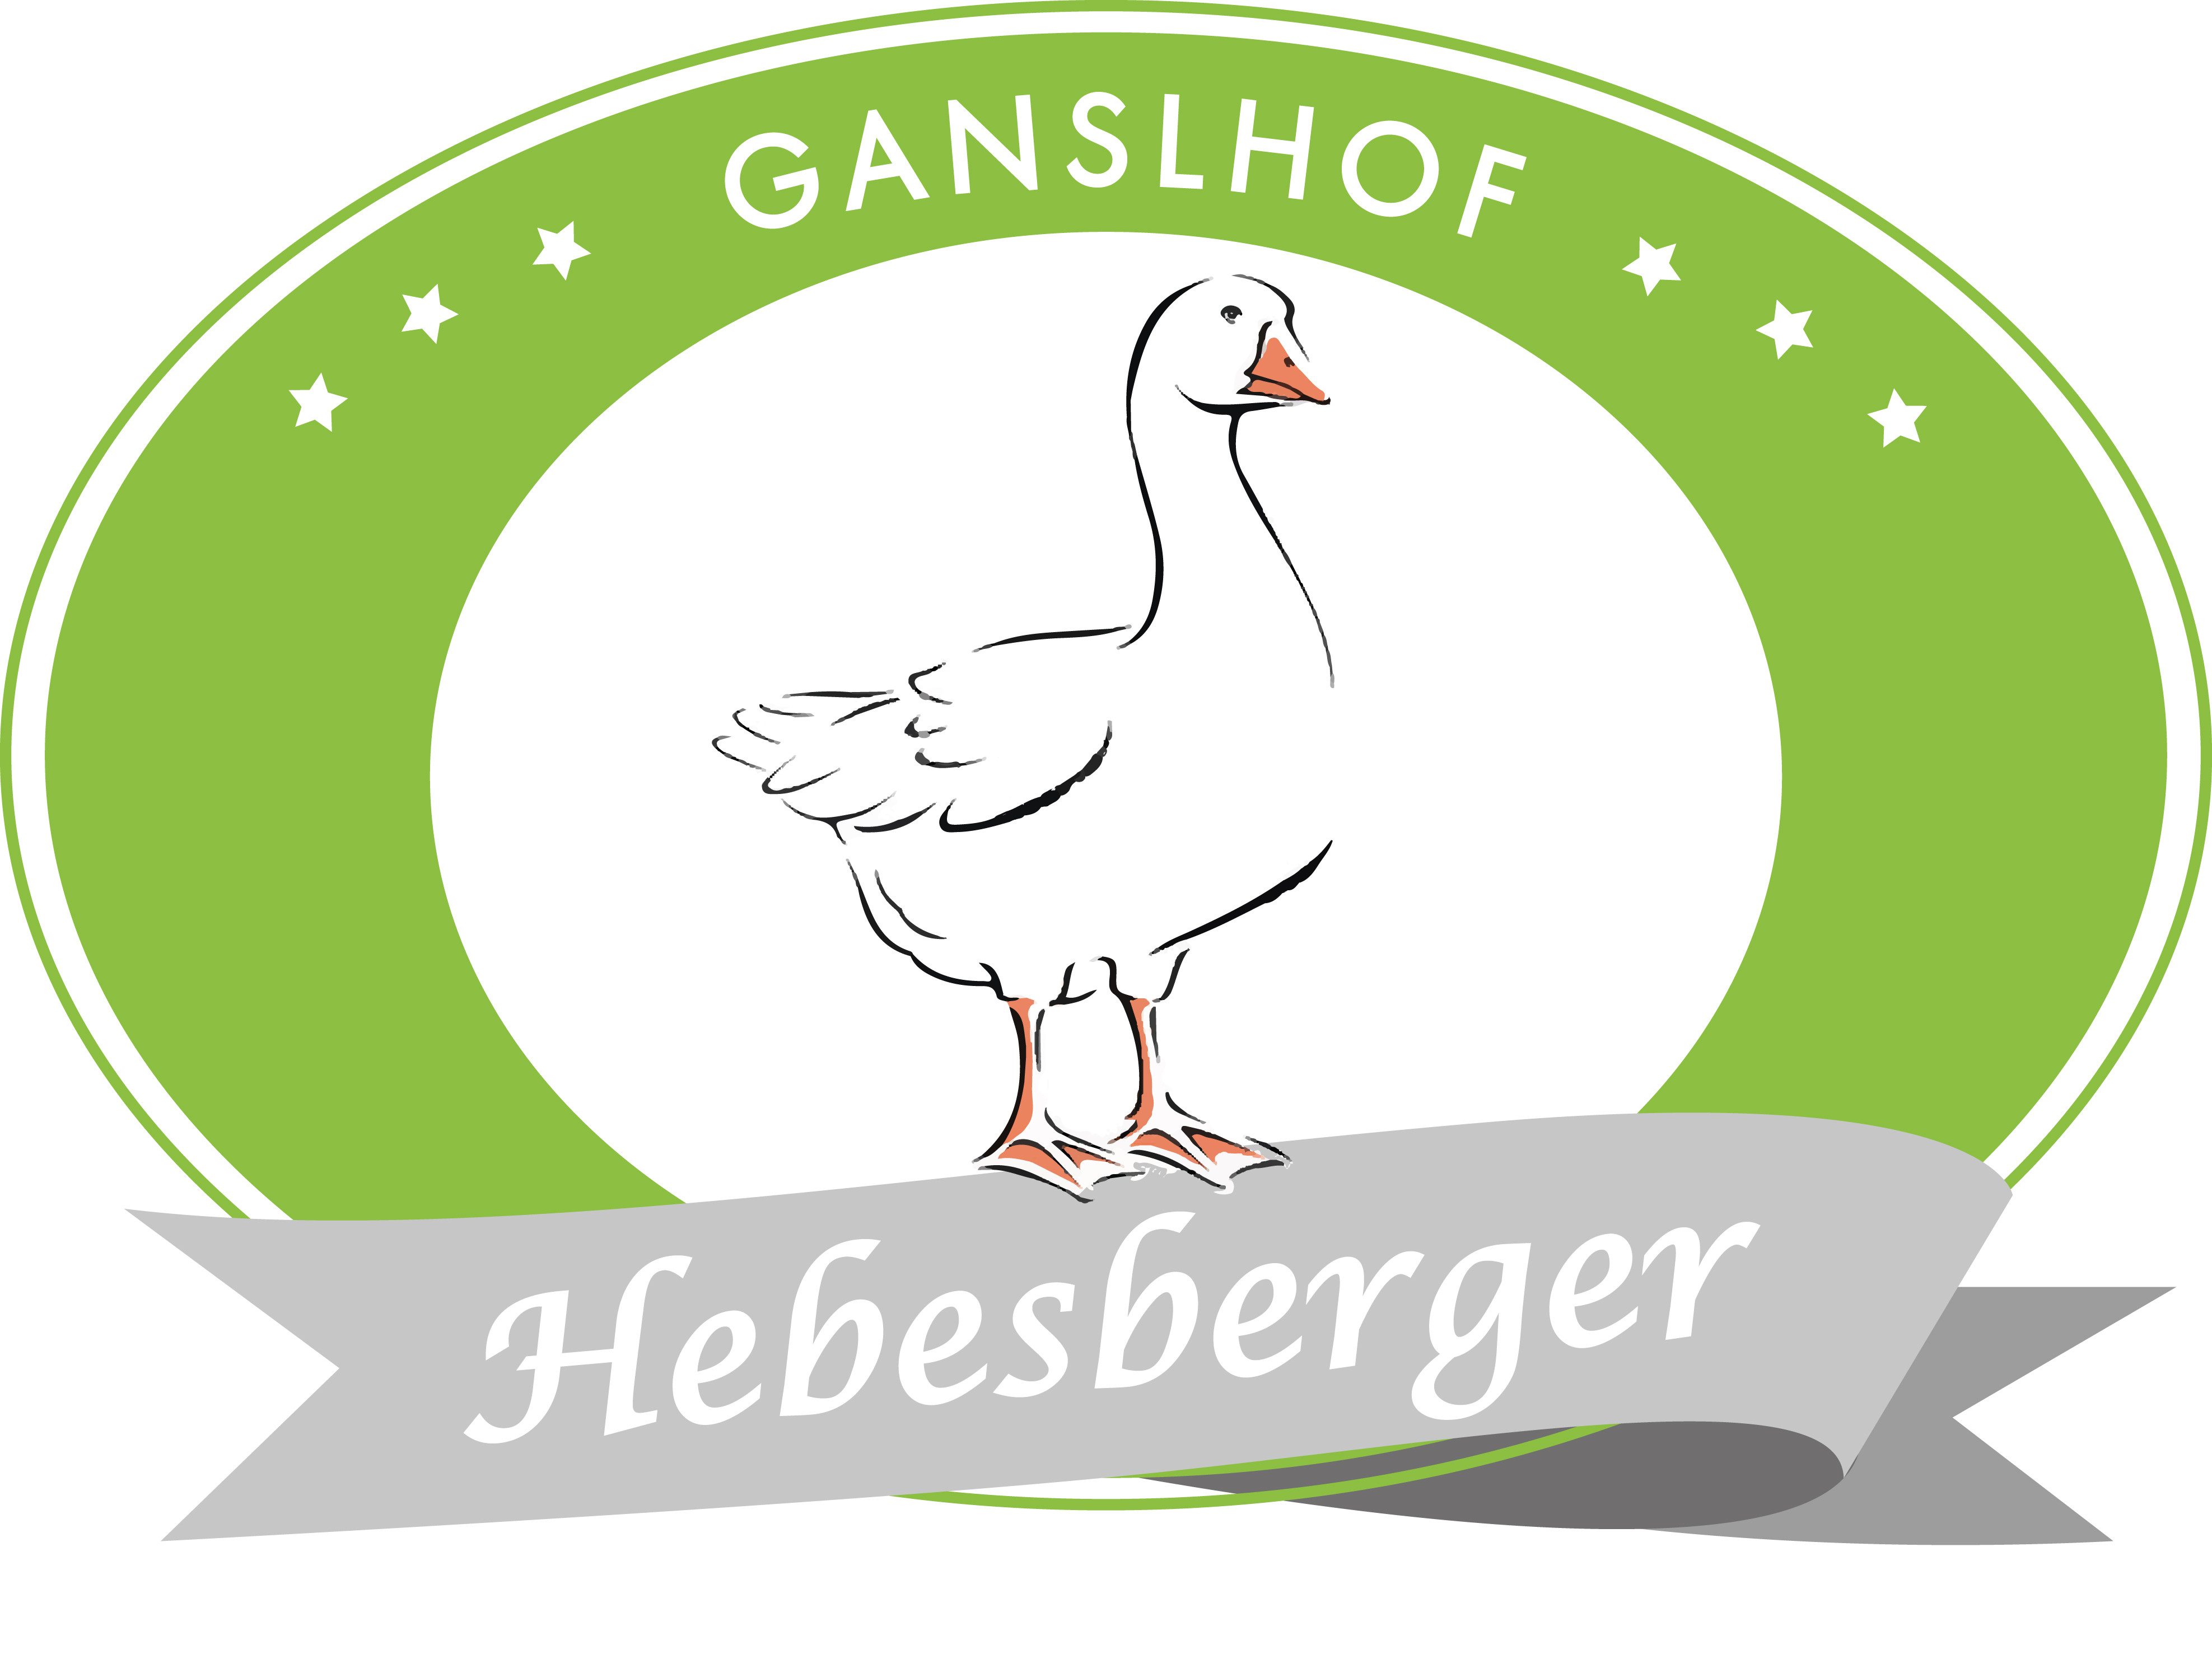 Ganslhof Hebesberger